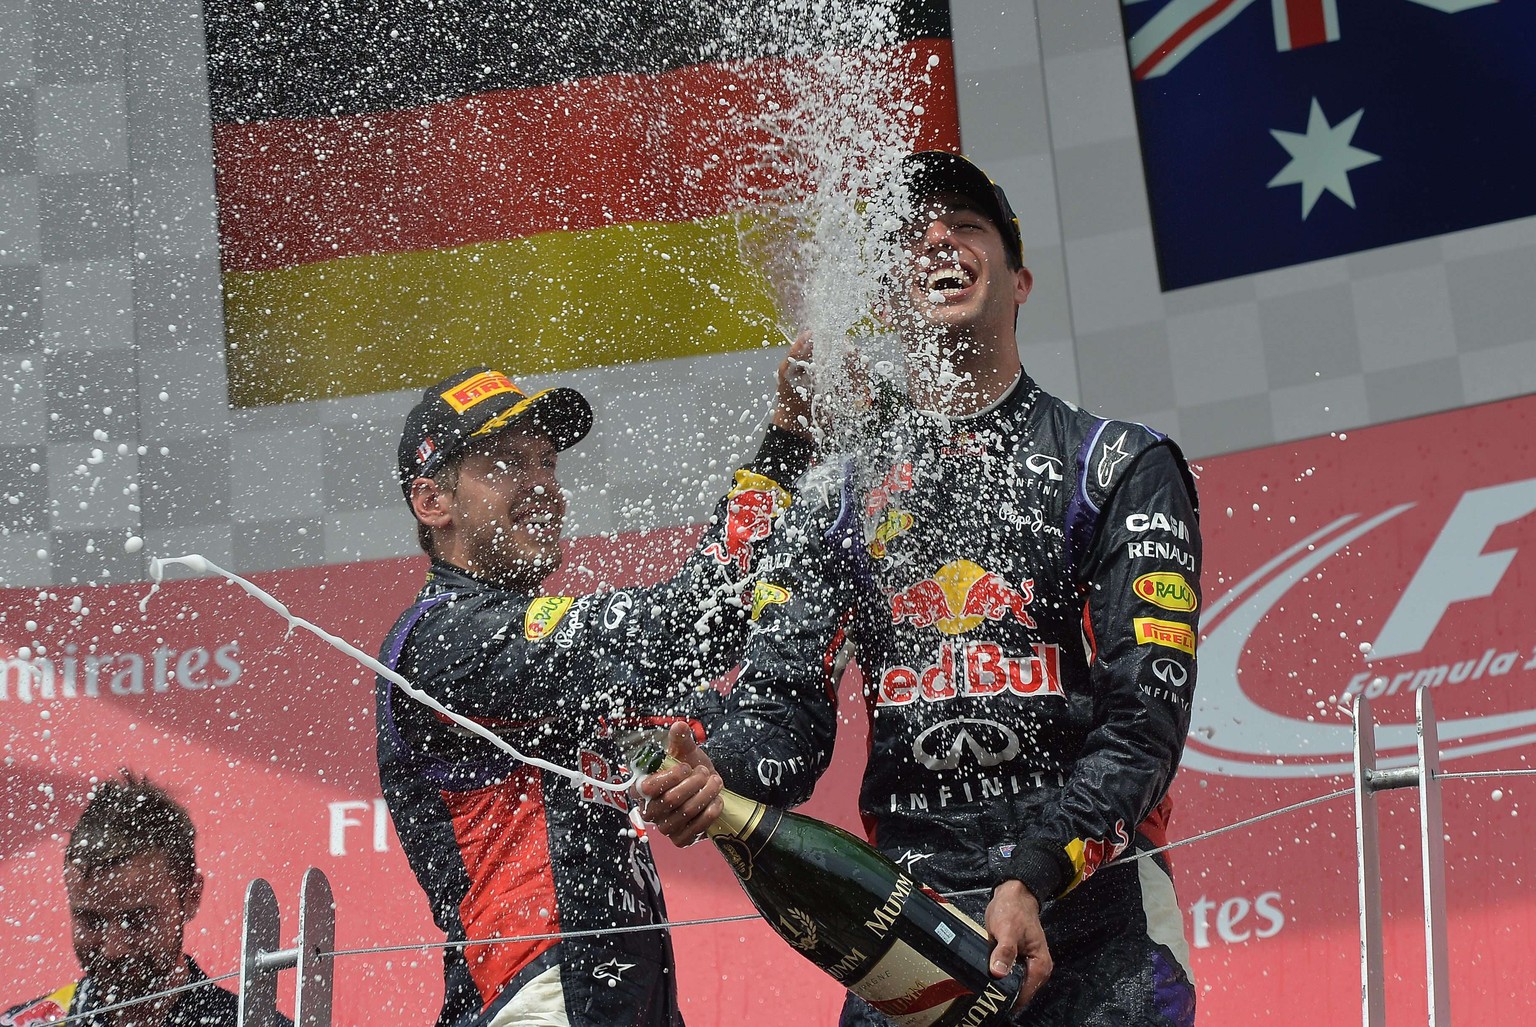 Champagnerdusche für den Sieger – Vettel feiert Teamkollege Ricciardo.